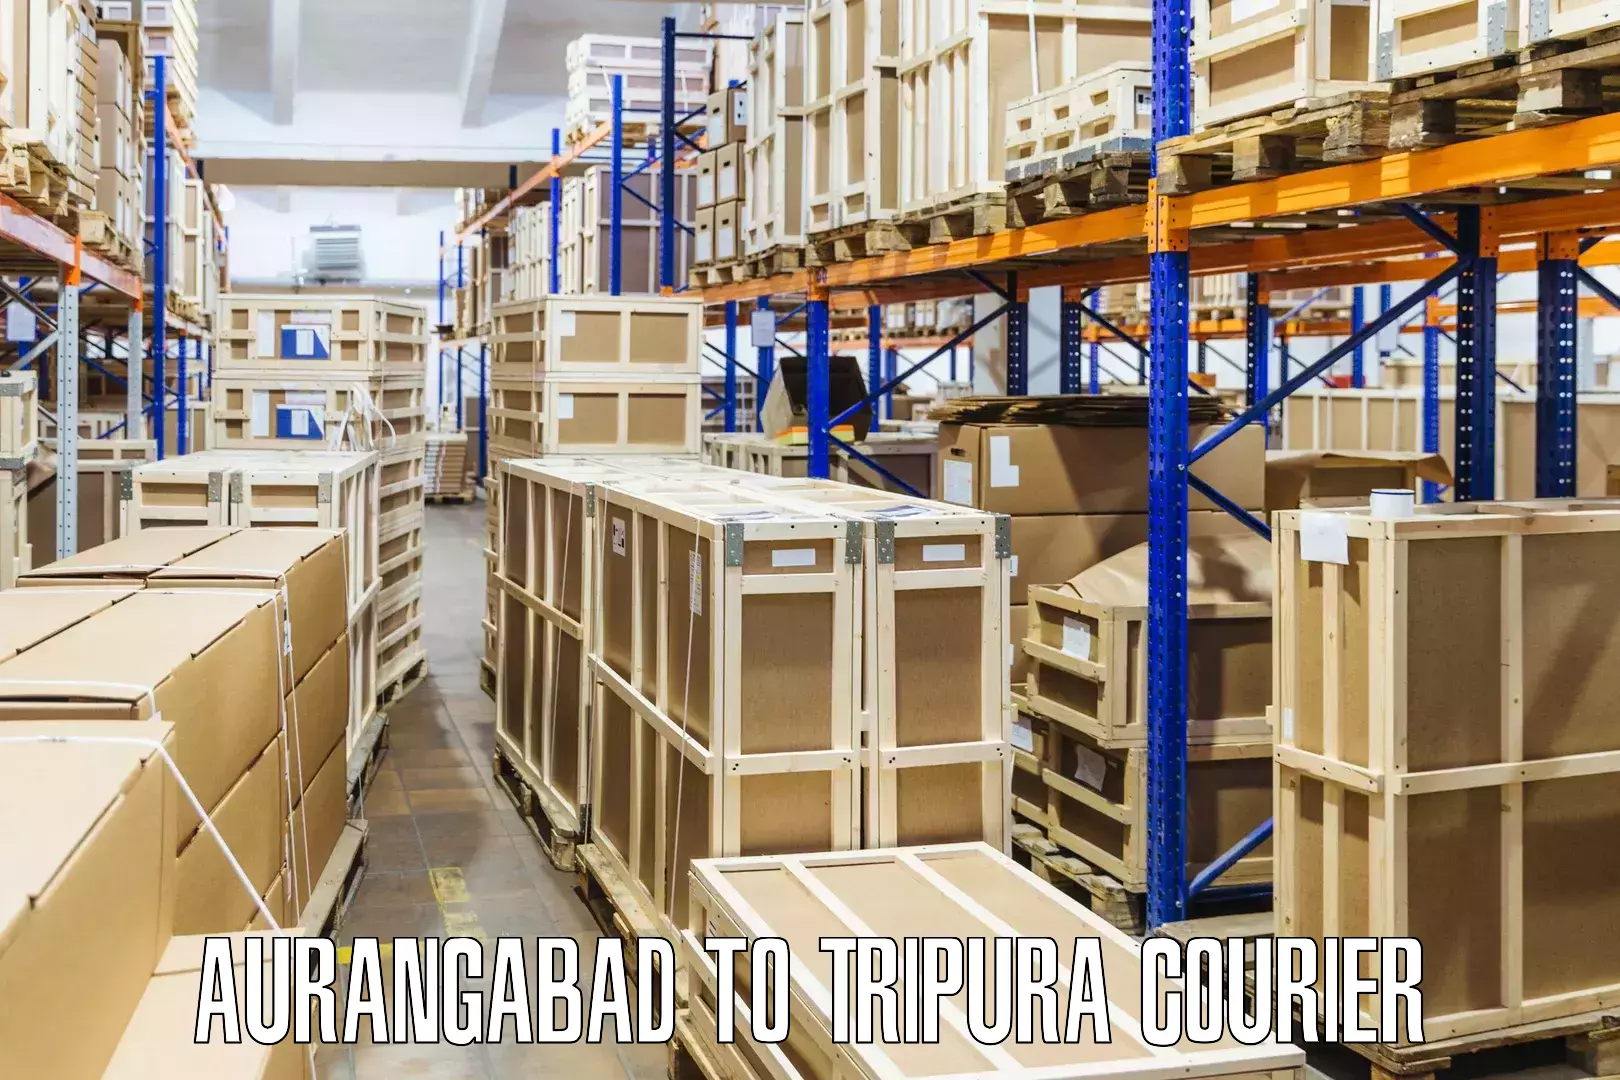 Ground shipping Aurangabad to West Tripura